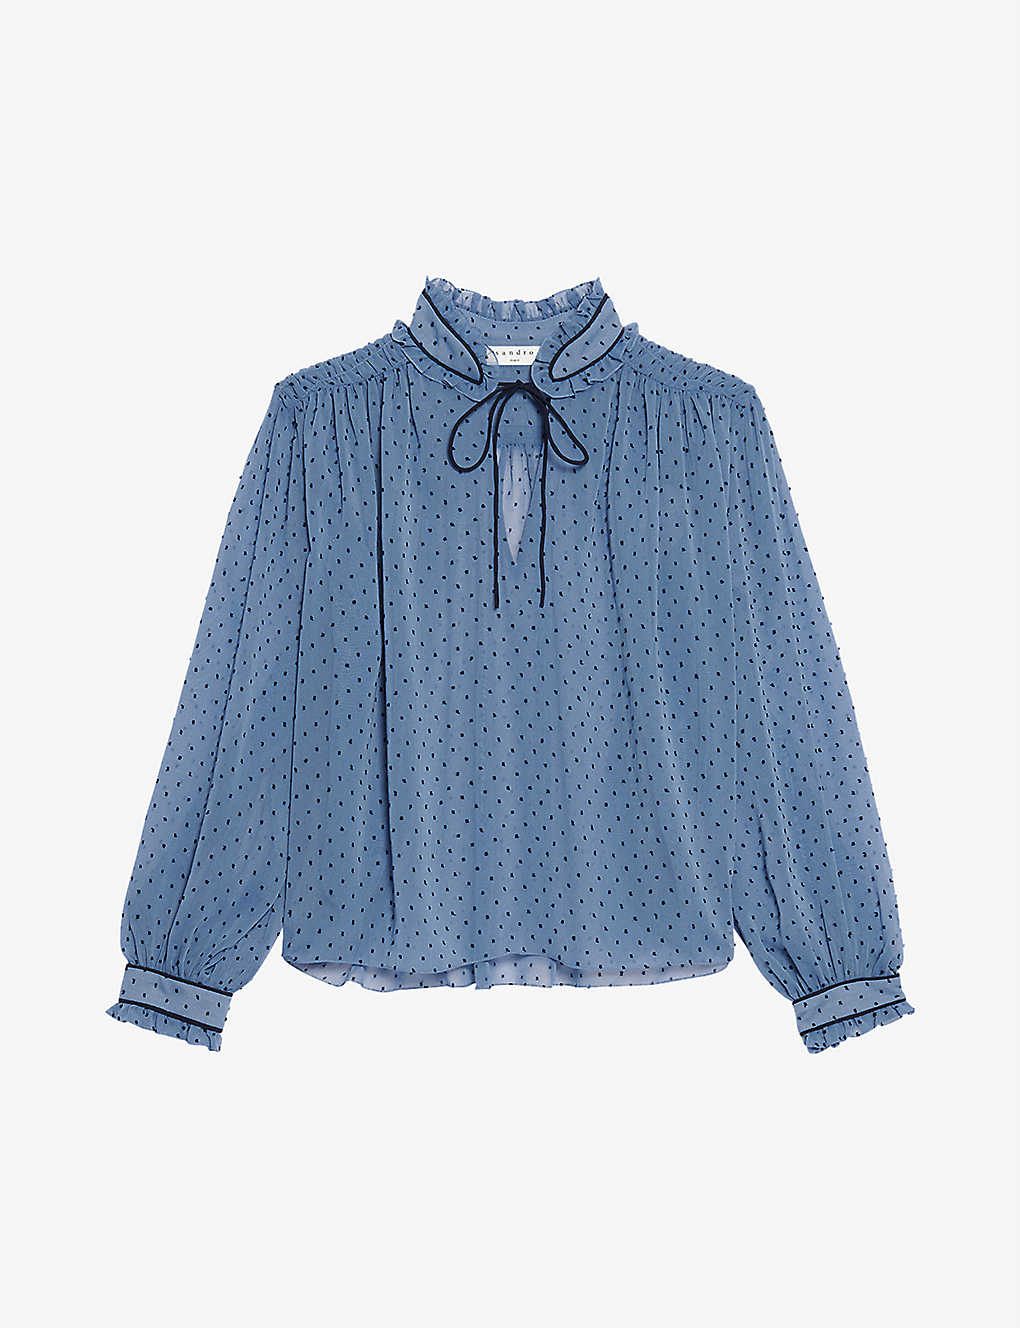 Zoe semi-sheer polka dot woven blouse(9445044)